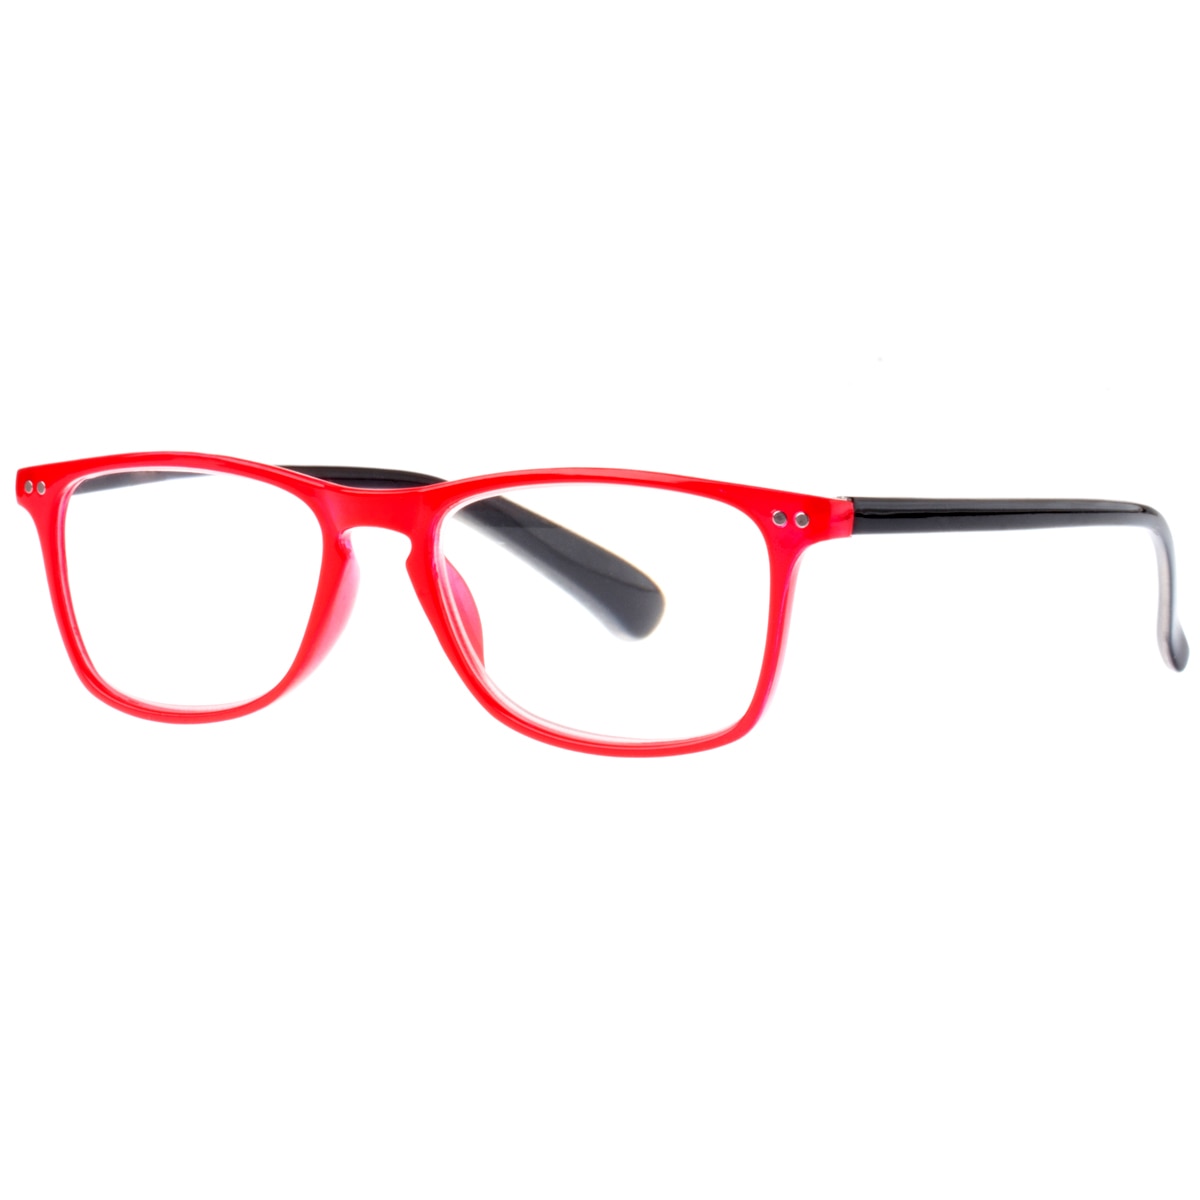 ahol ellenőrizheti látását és vásárolhat szemüveget)